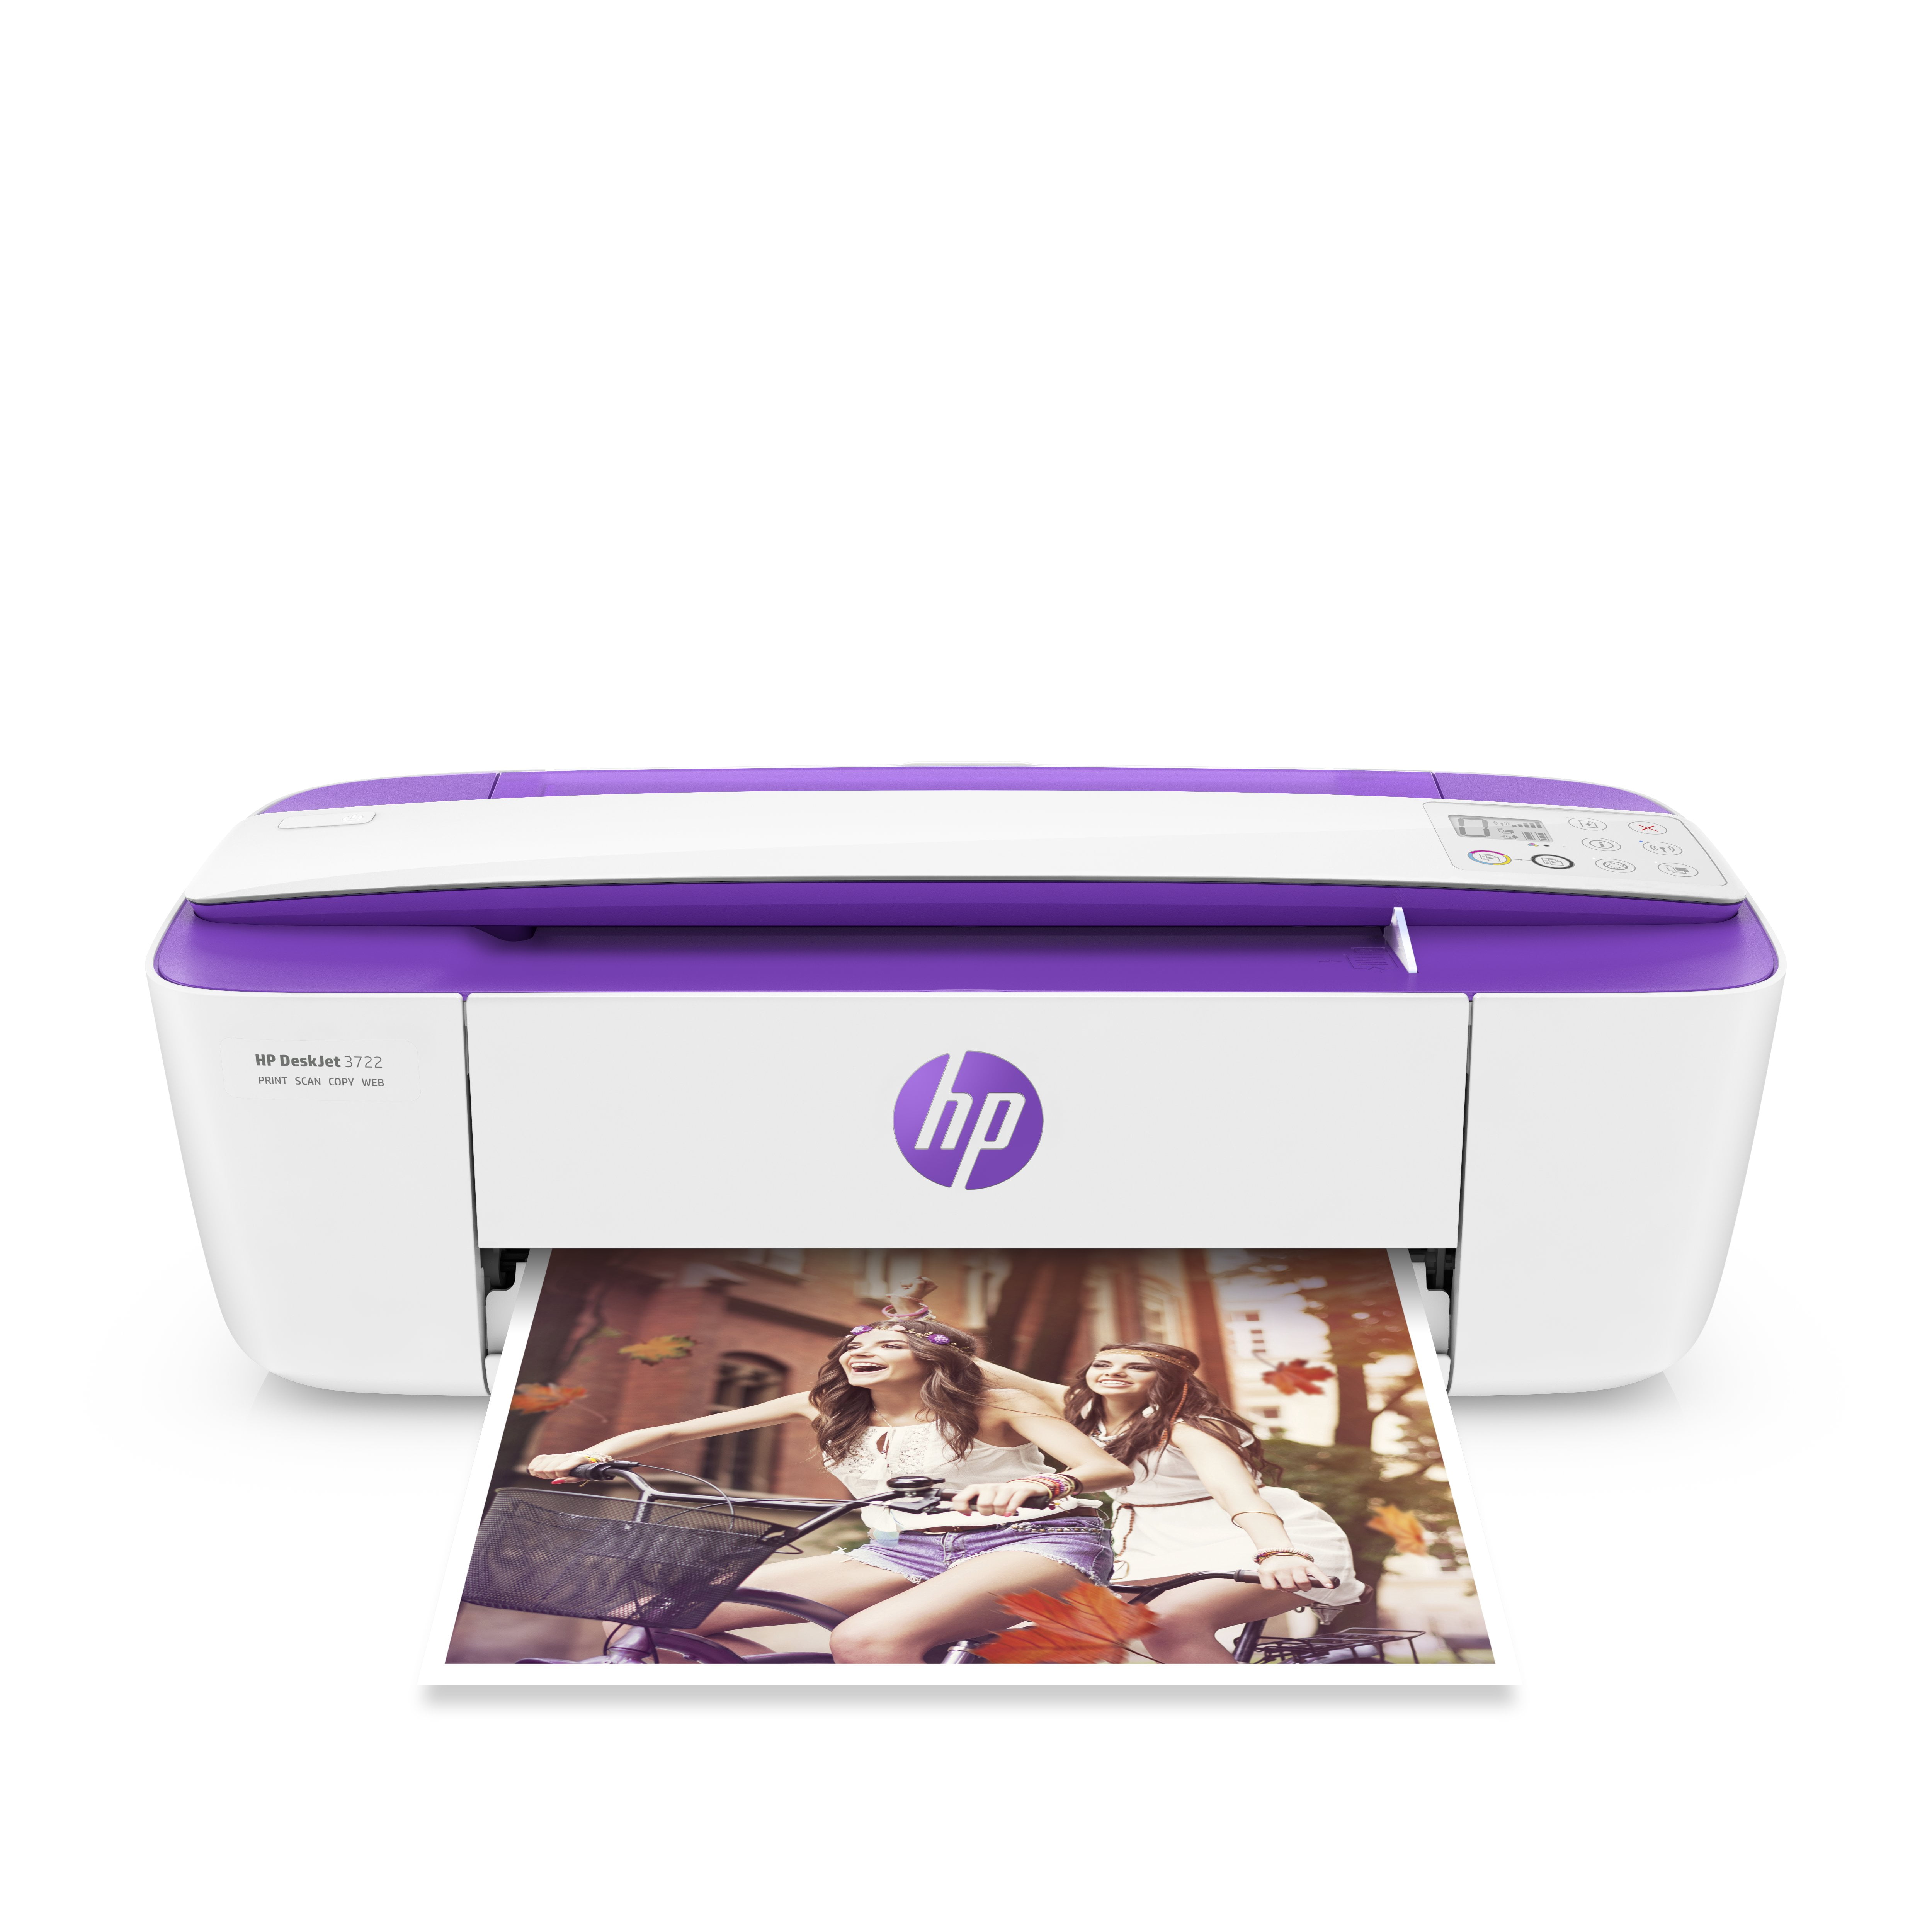 Begivenhed bredde fajance HP DeskJet 3722 All-in-One Printer Purple - Walmart.com